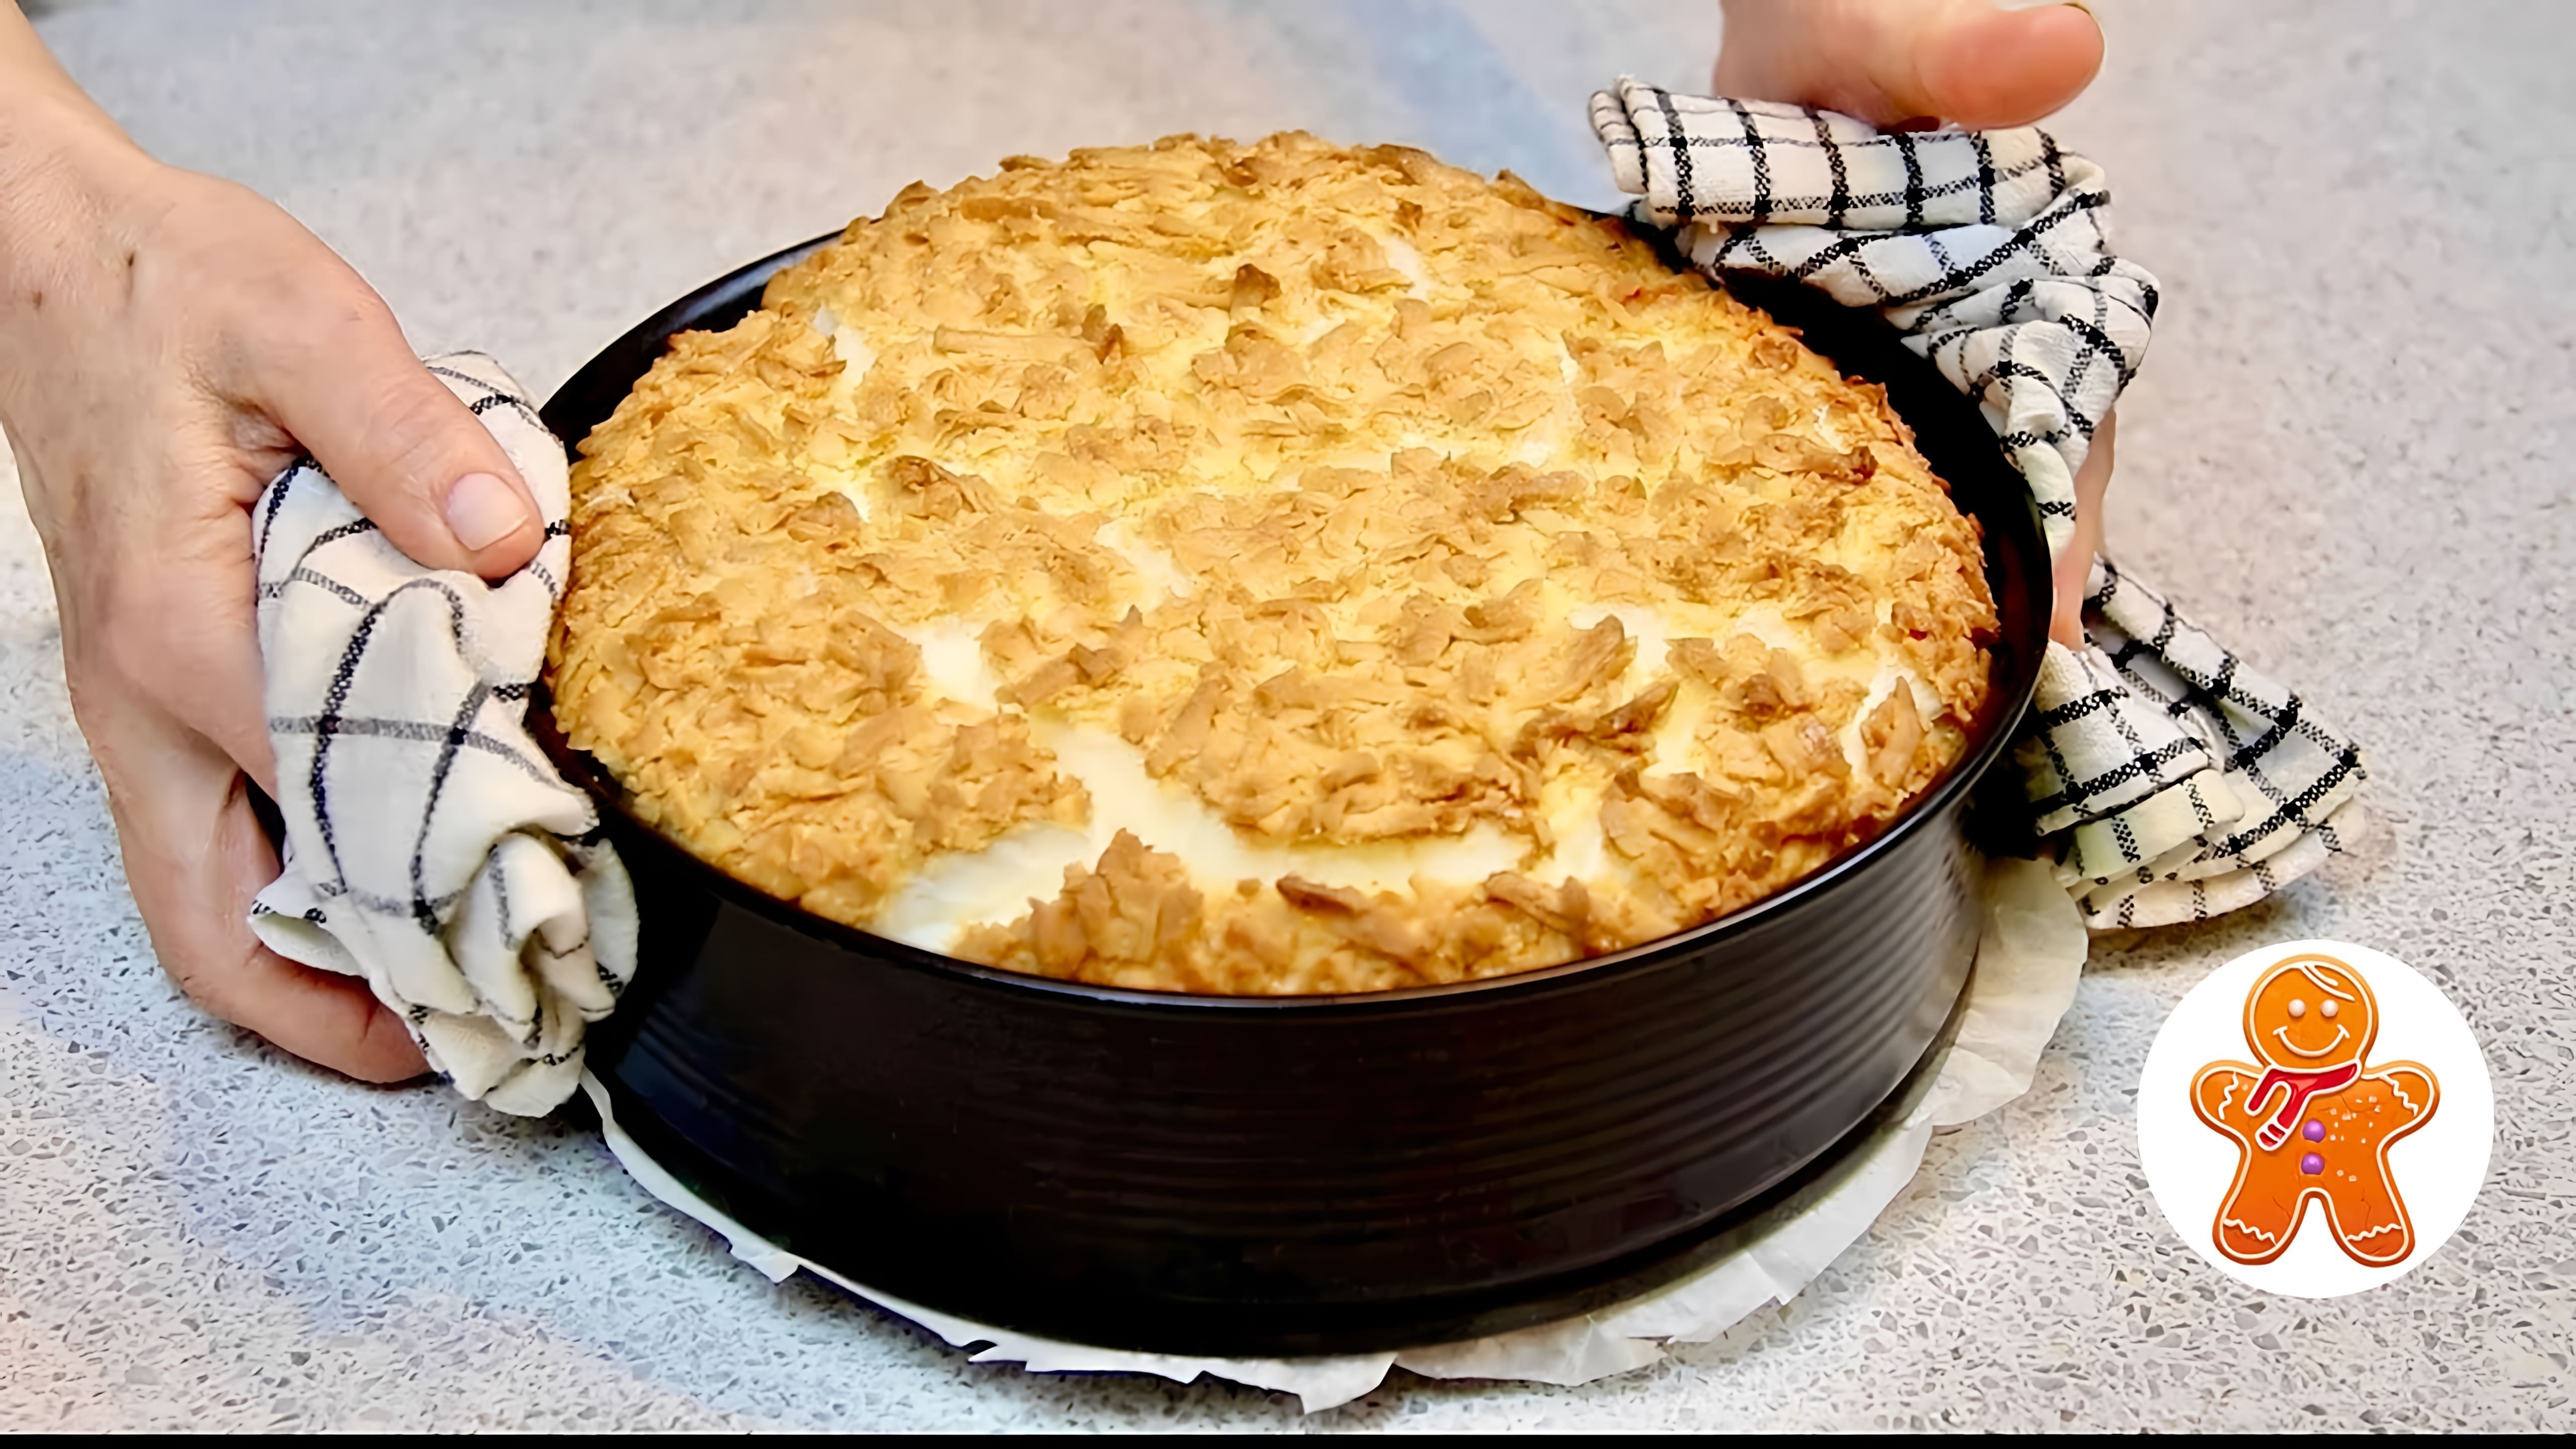 В этом видео демонстрируется процесс приготовления итальянского сметанного пирога